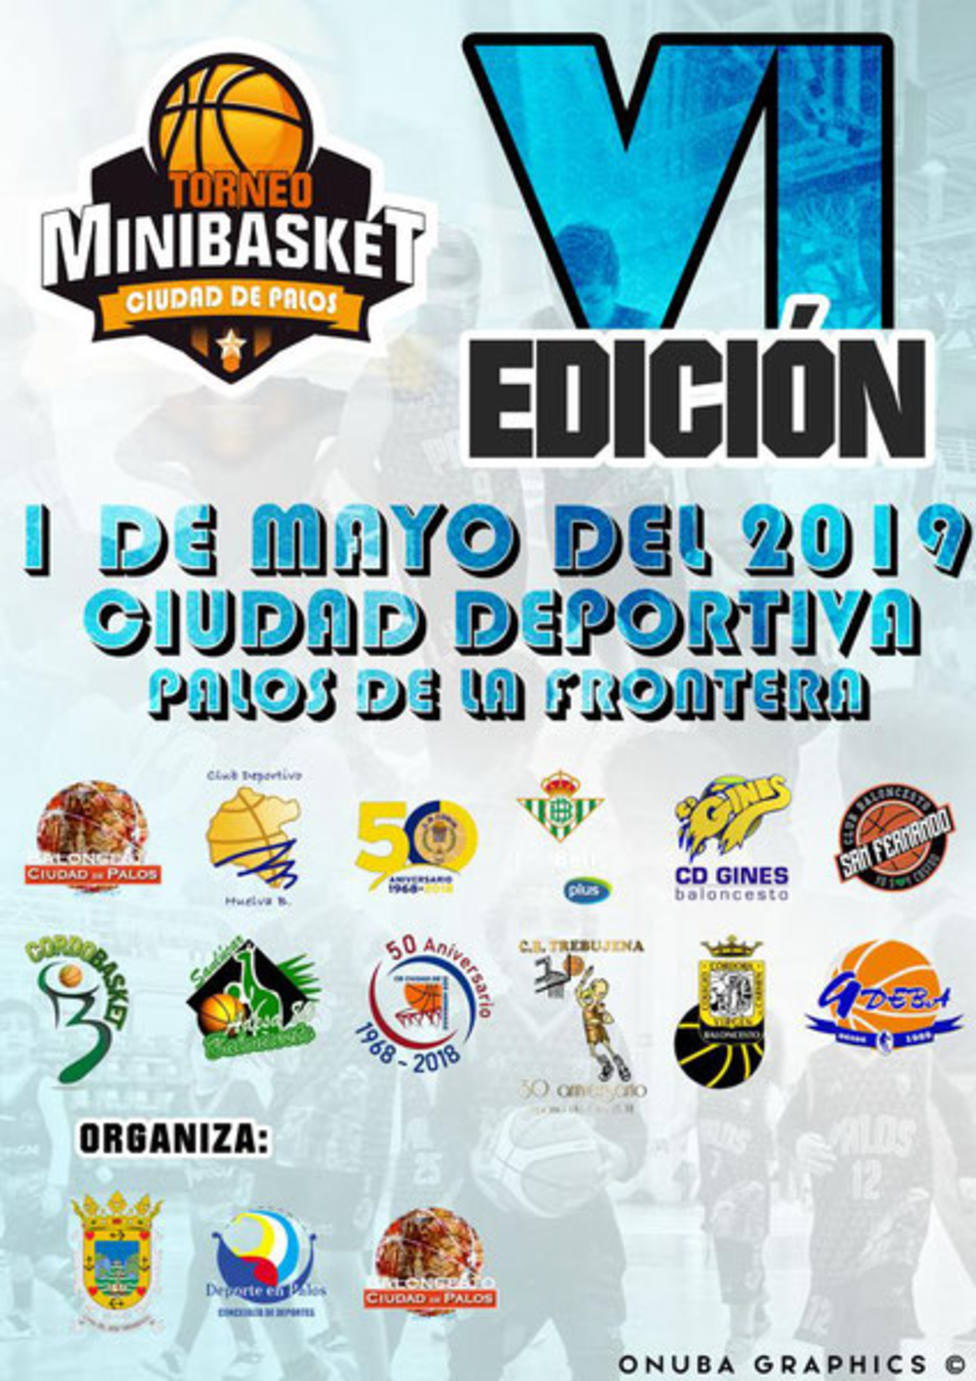 Cartel anunciador del torneo Ciudad de Palos de Unibasket